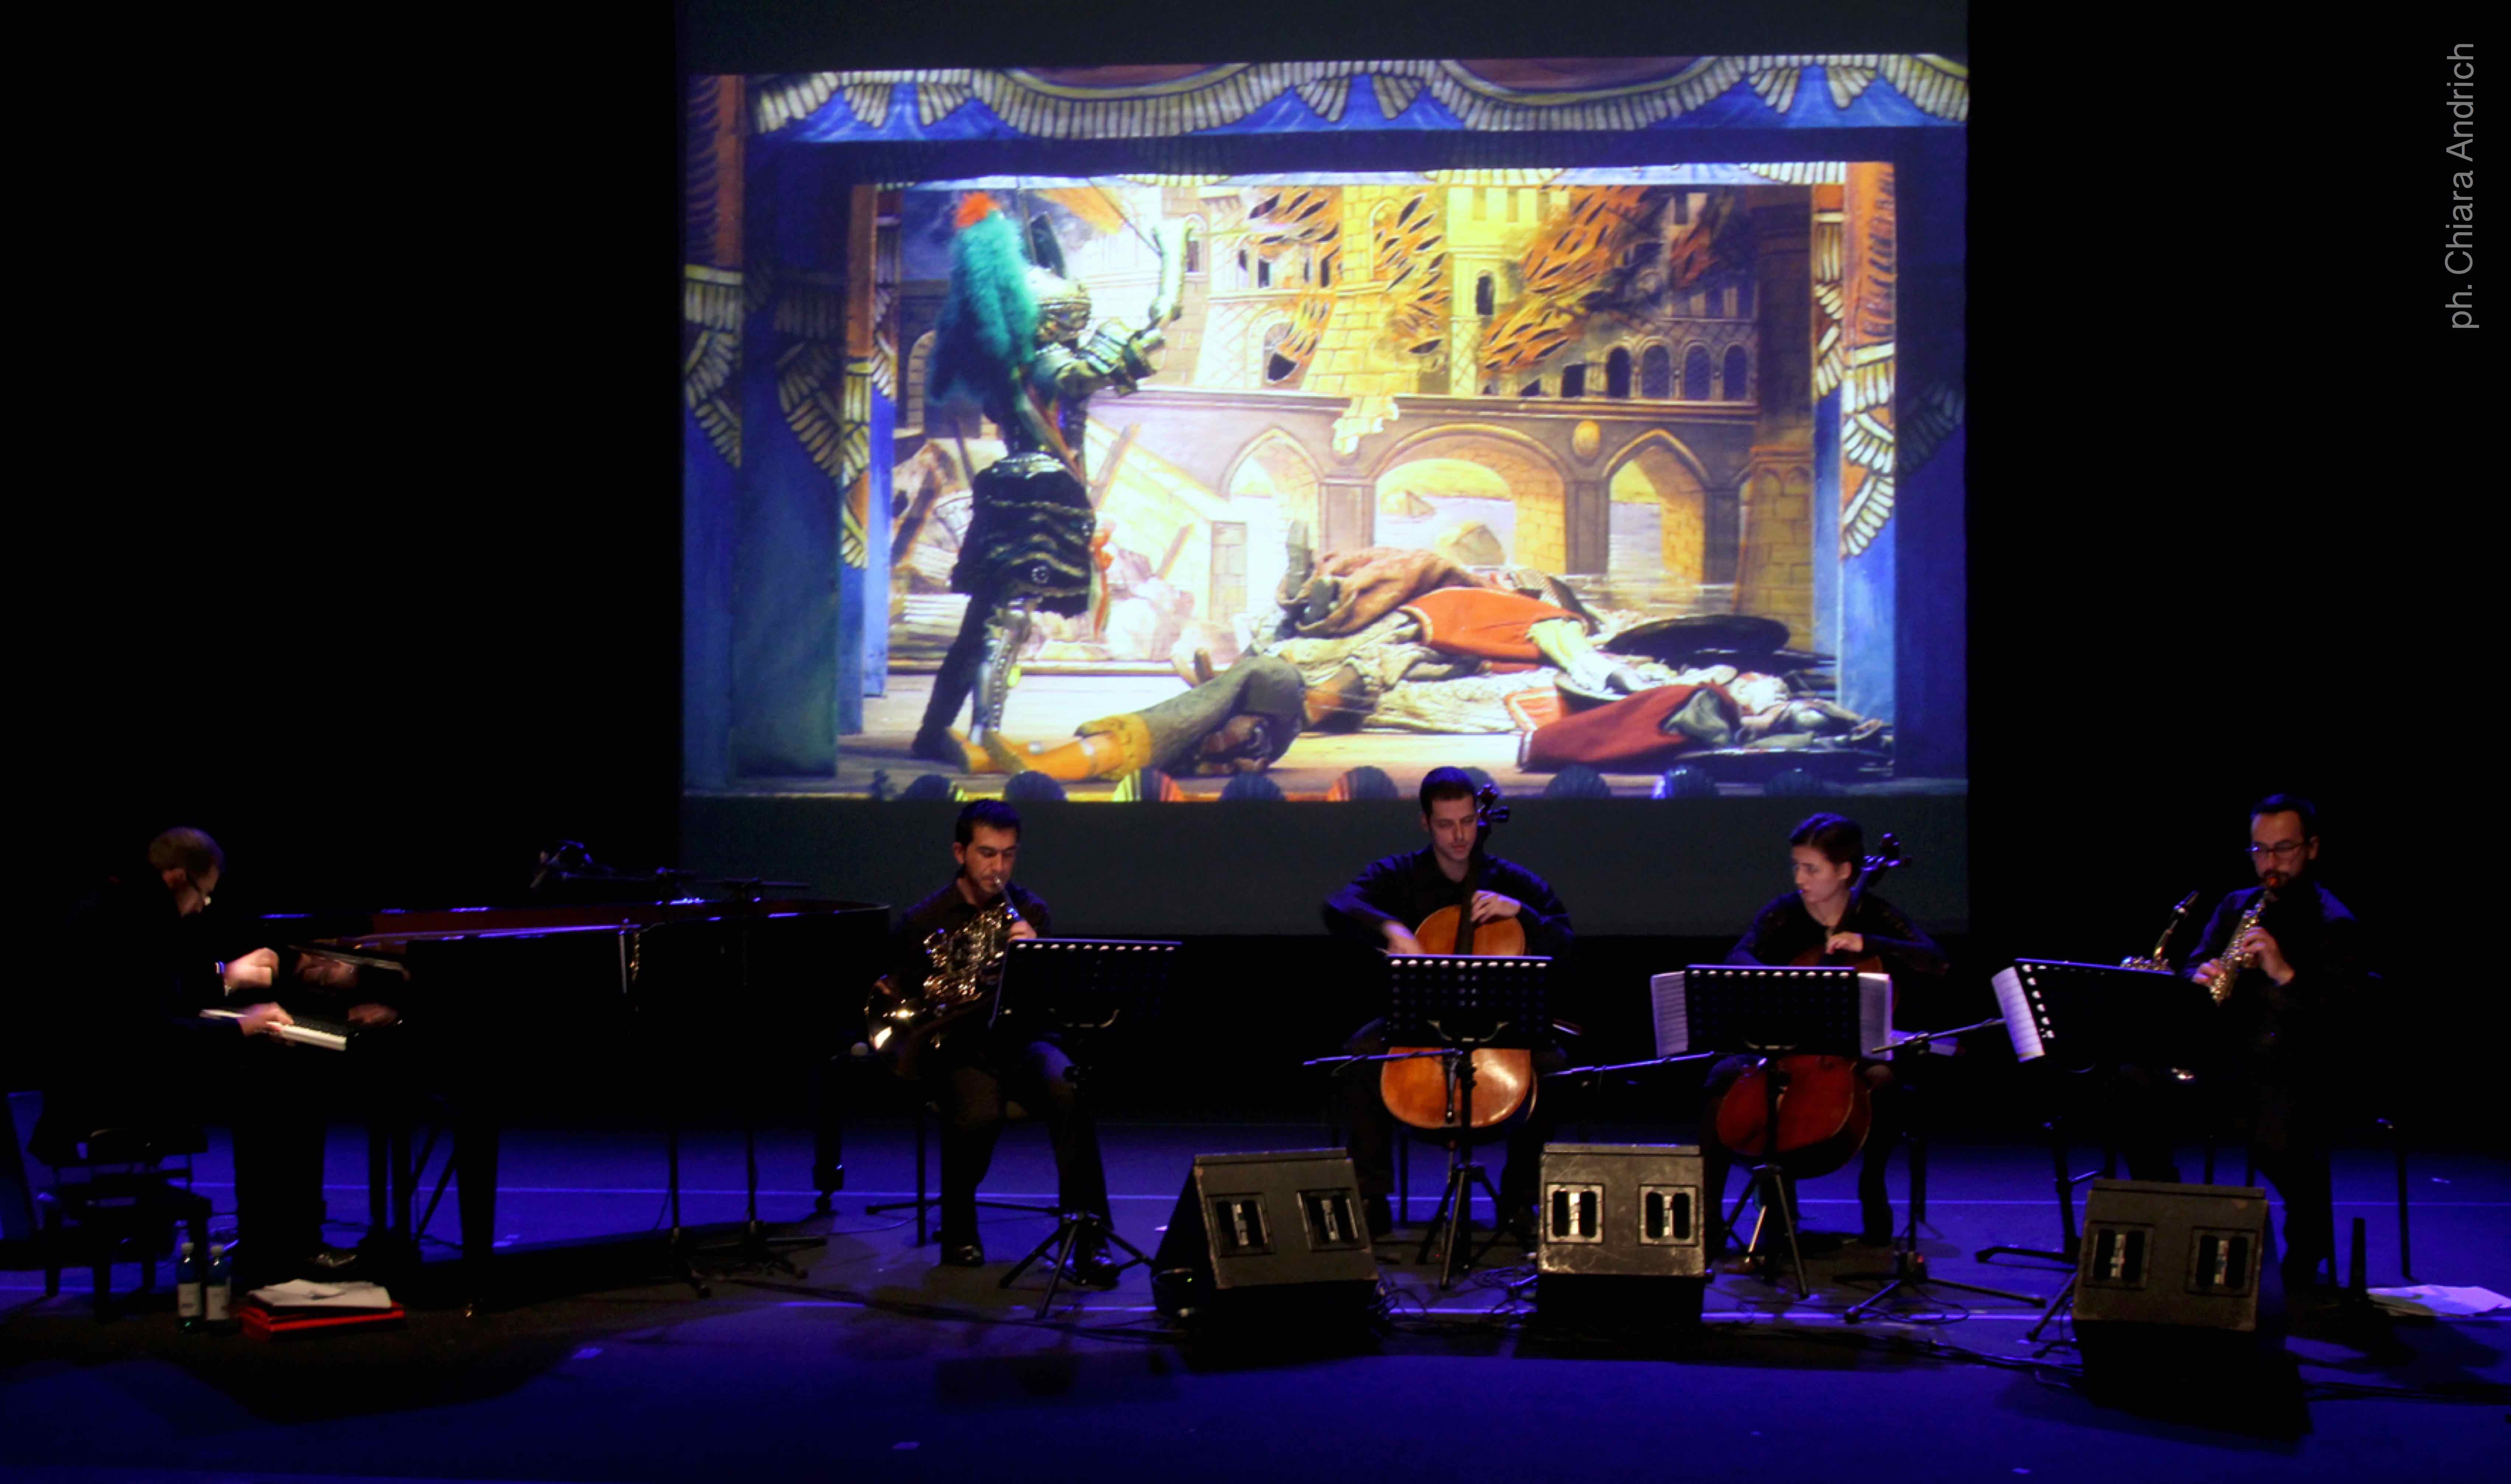 Giacomo Cuticchio Ensemble perform "Rapsodia Fantastica" Roma - Auditorium Parco della Musica © Vhiara Andrich 2014